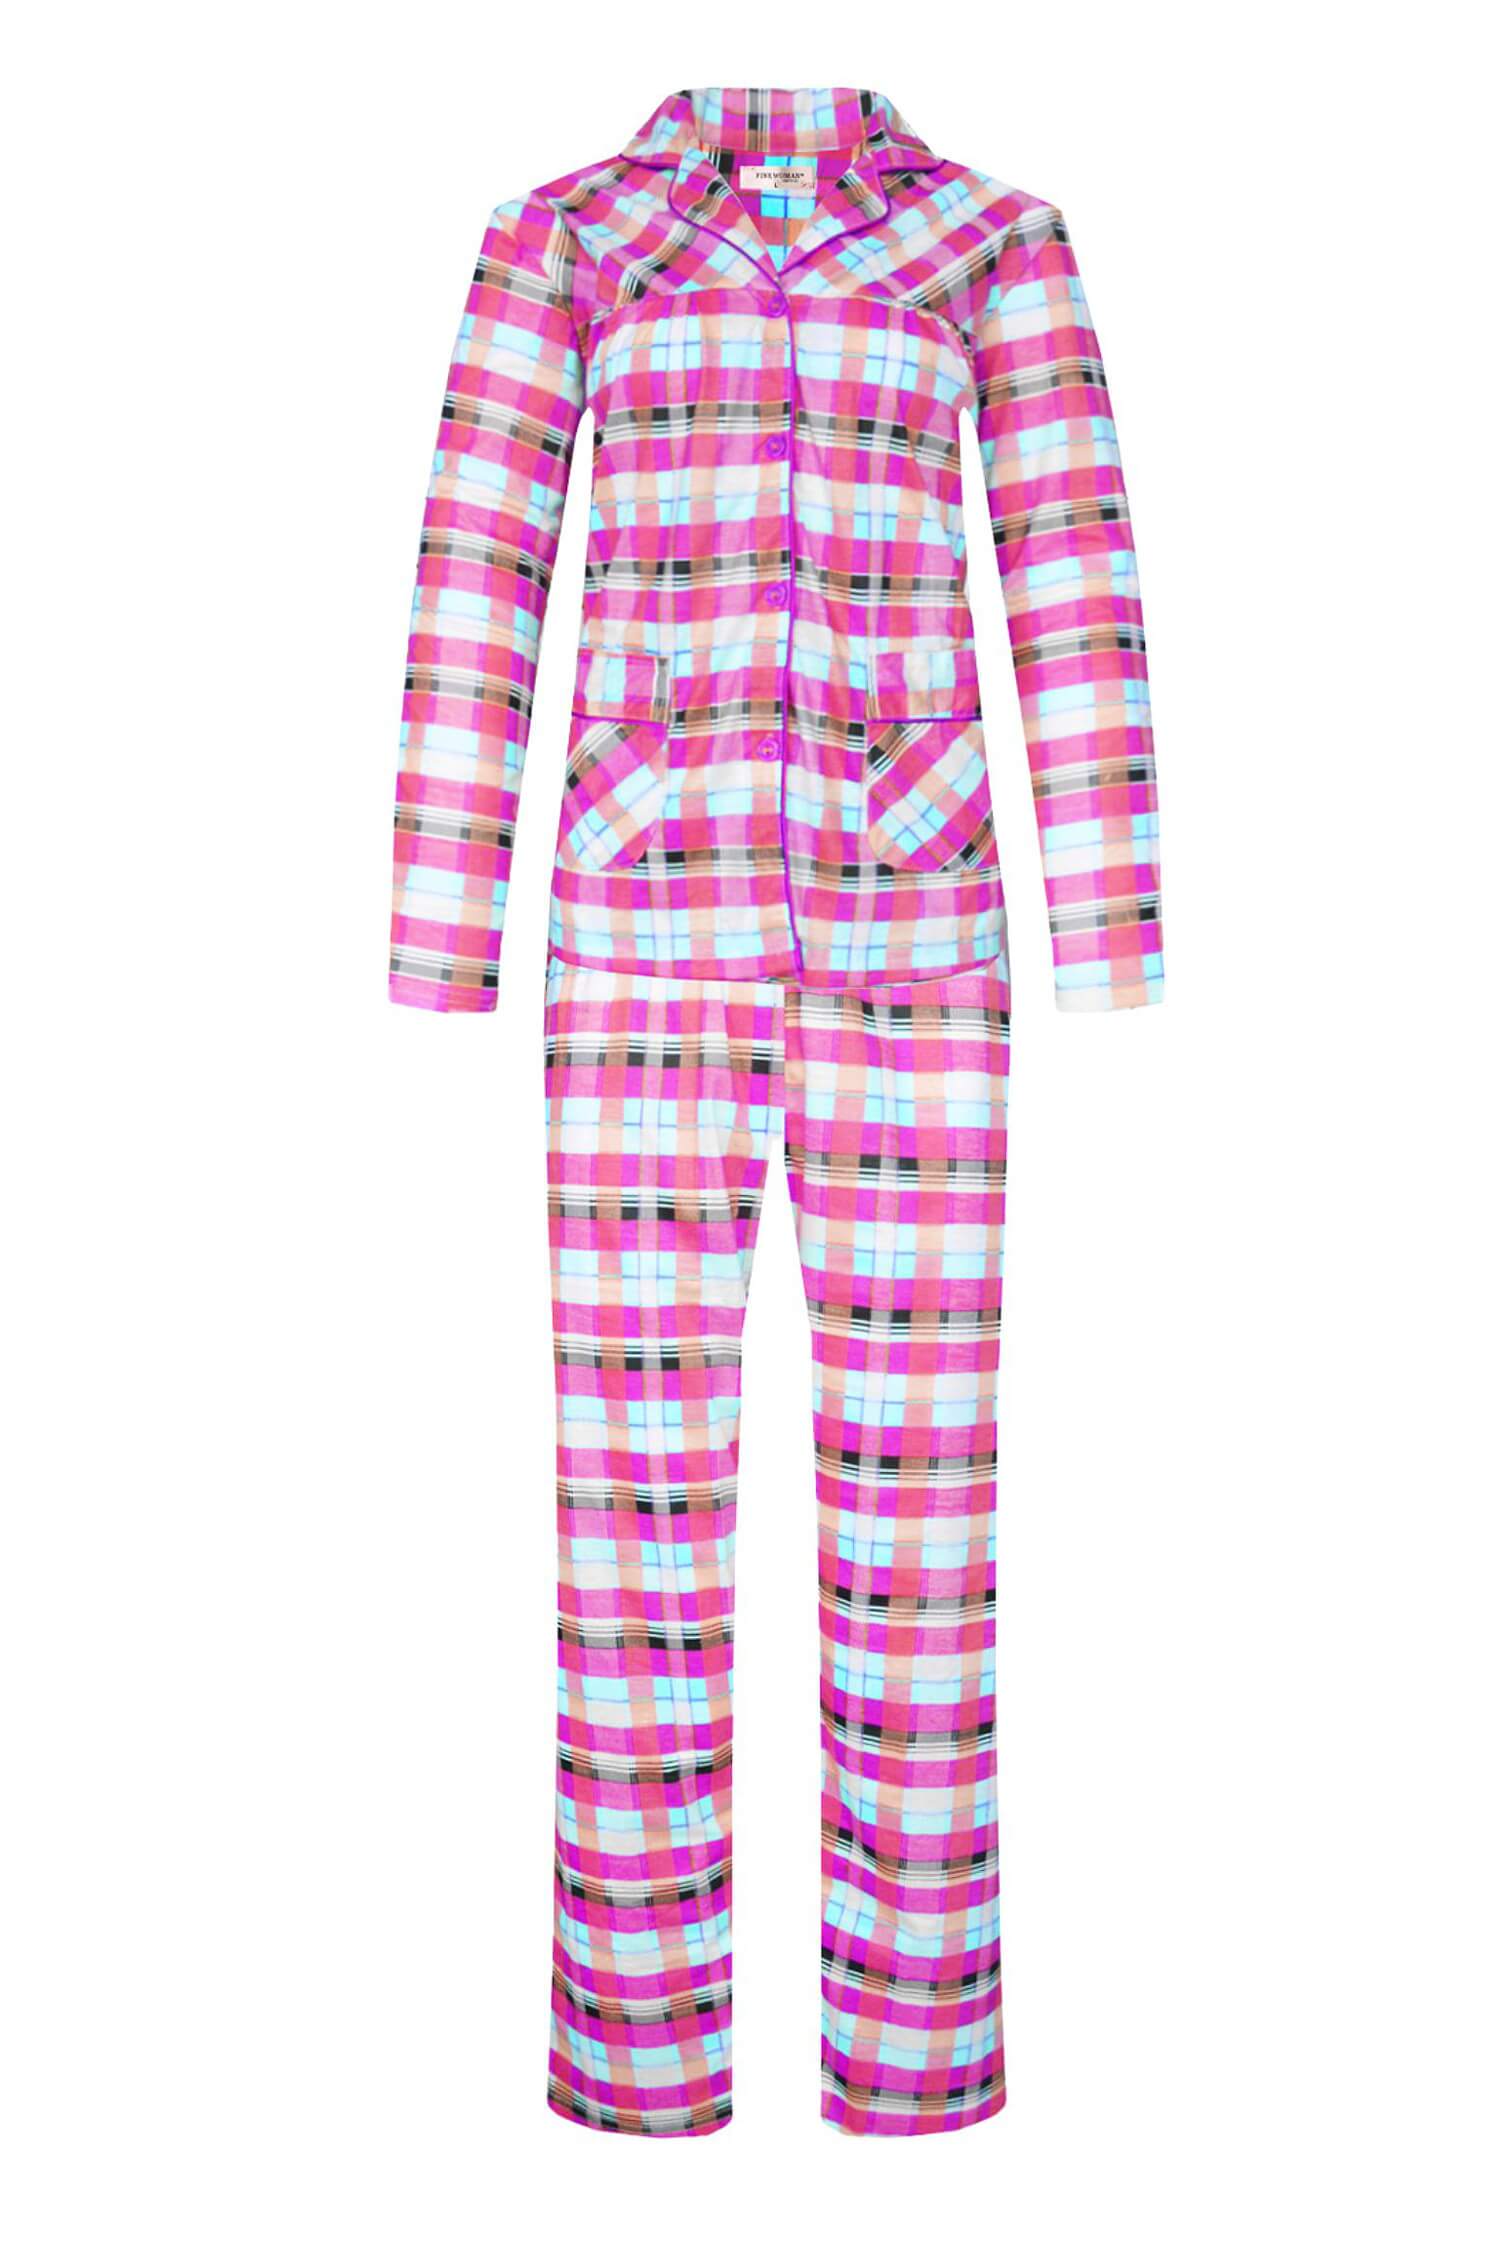 Odeta dámské kostkované pyžamo dlouhé 2271 3XL růžová